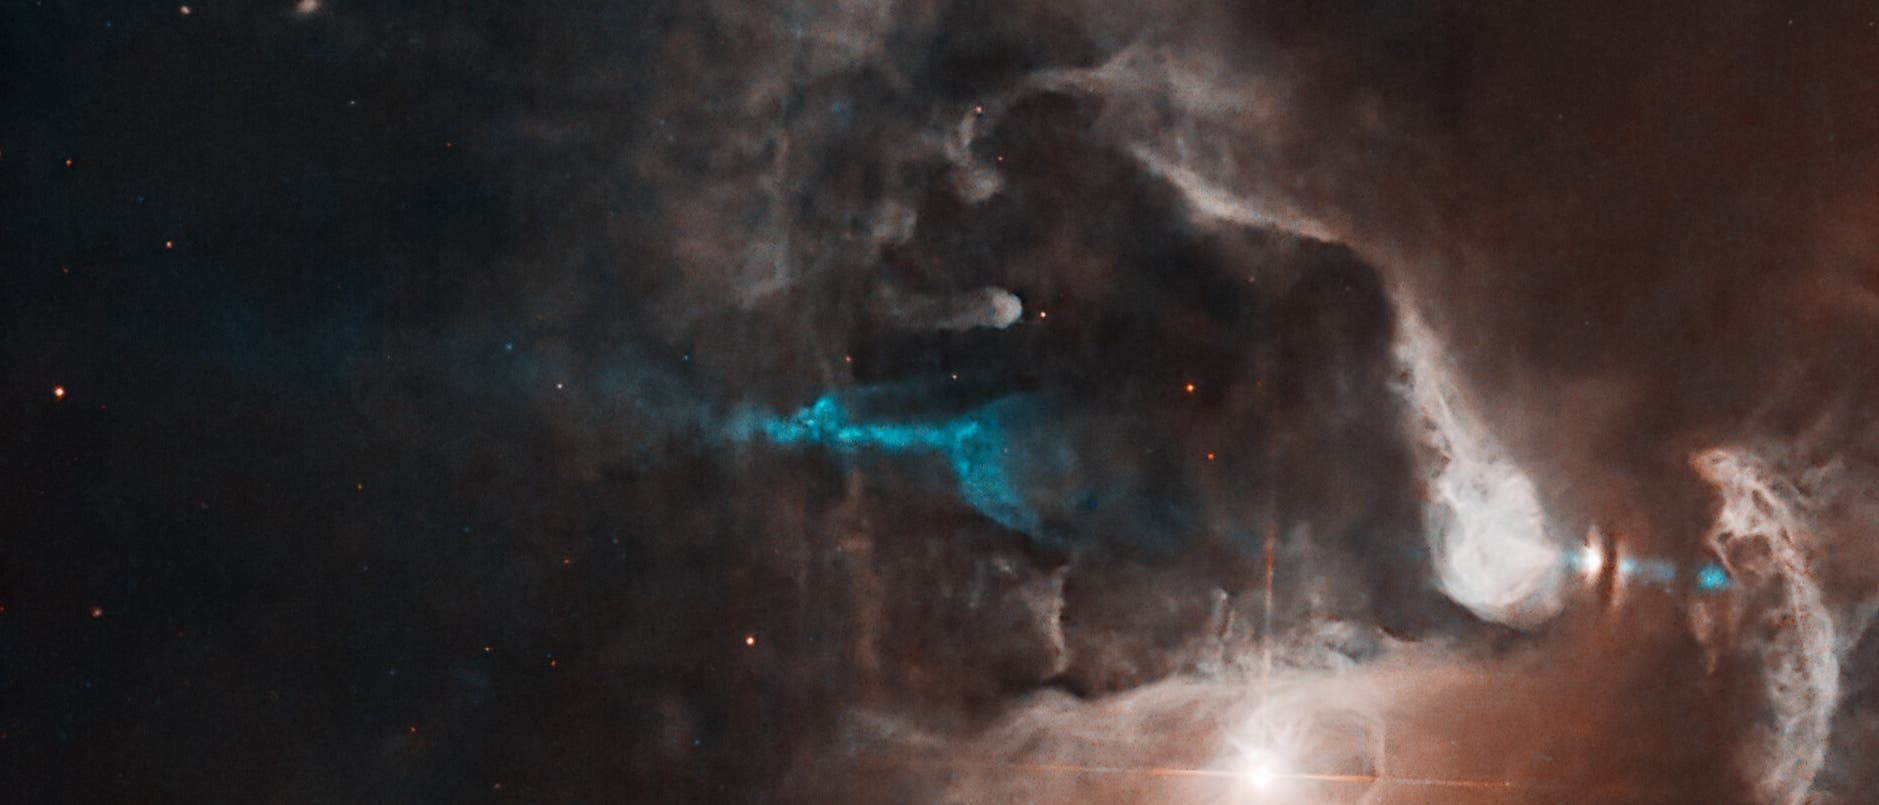 Ein neuer Stern im Sternbild Stier (Aufnahme des Weltraumteleskops Hubble)